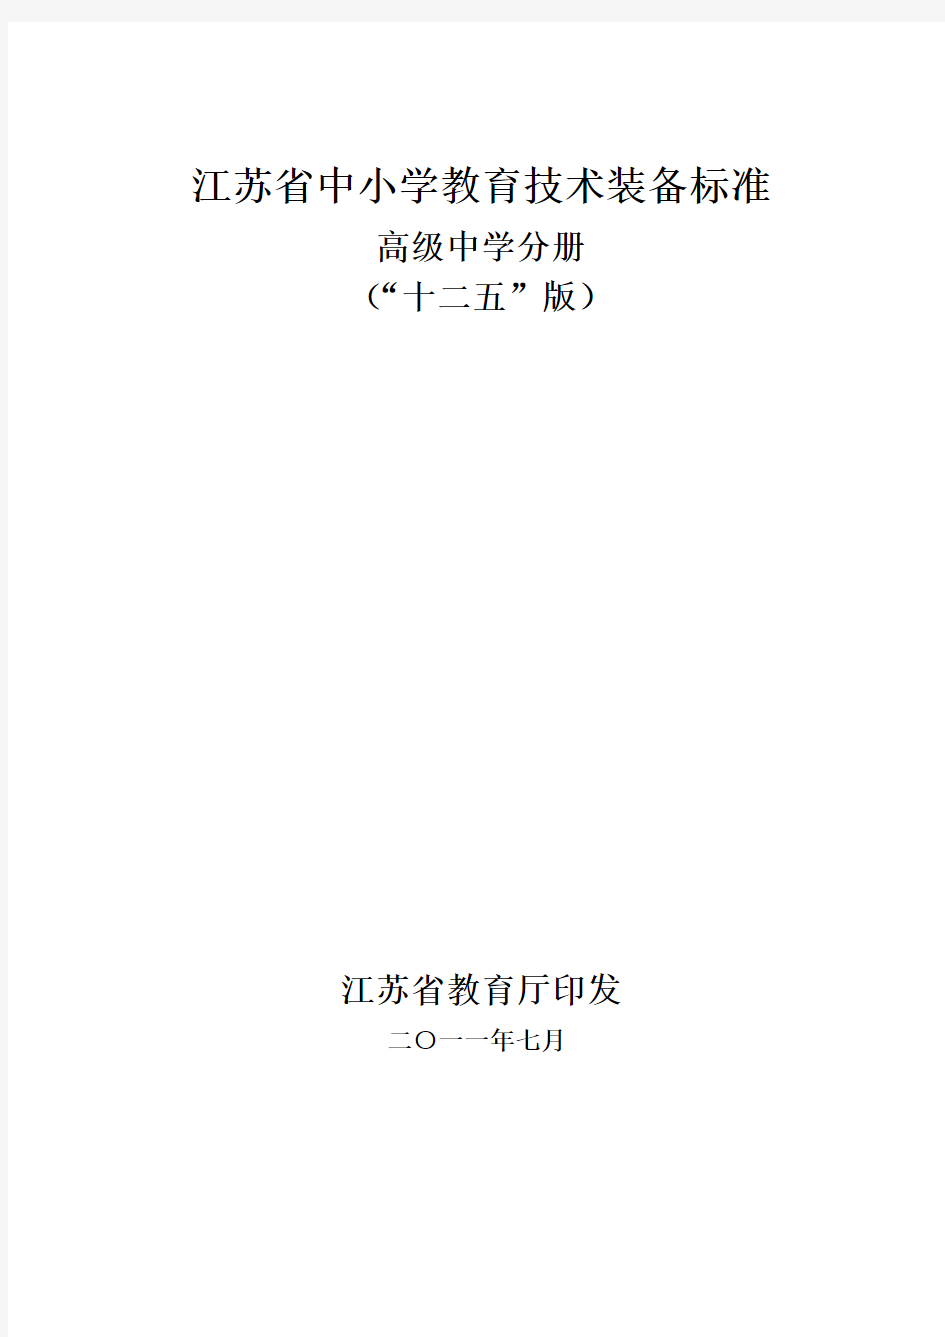 江苏省中小学教育技术装备标准(“十二五”版)高级中学分册